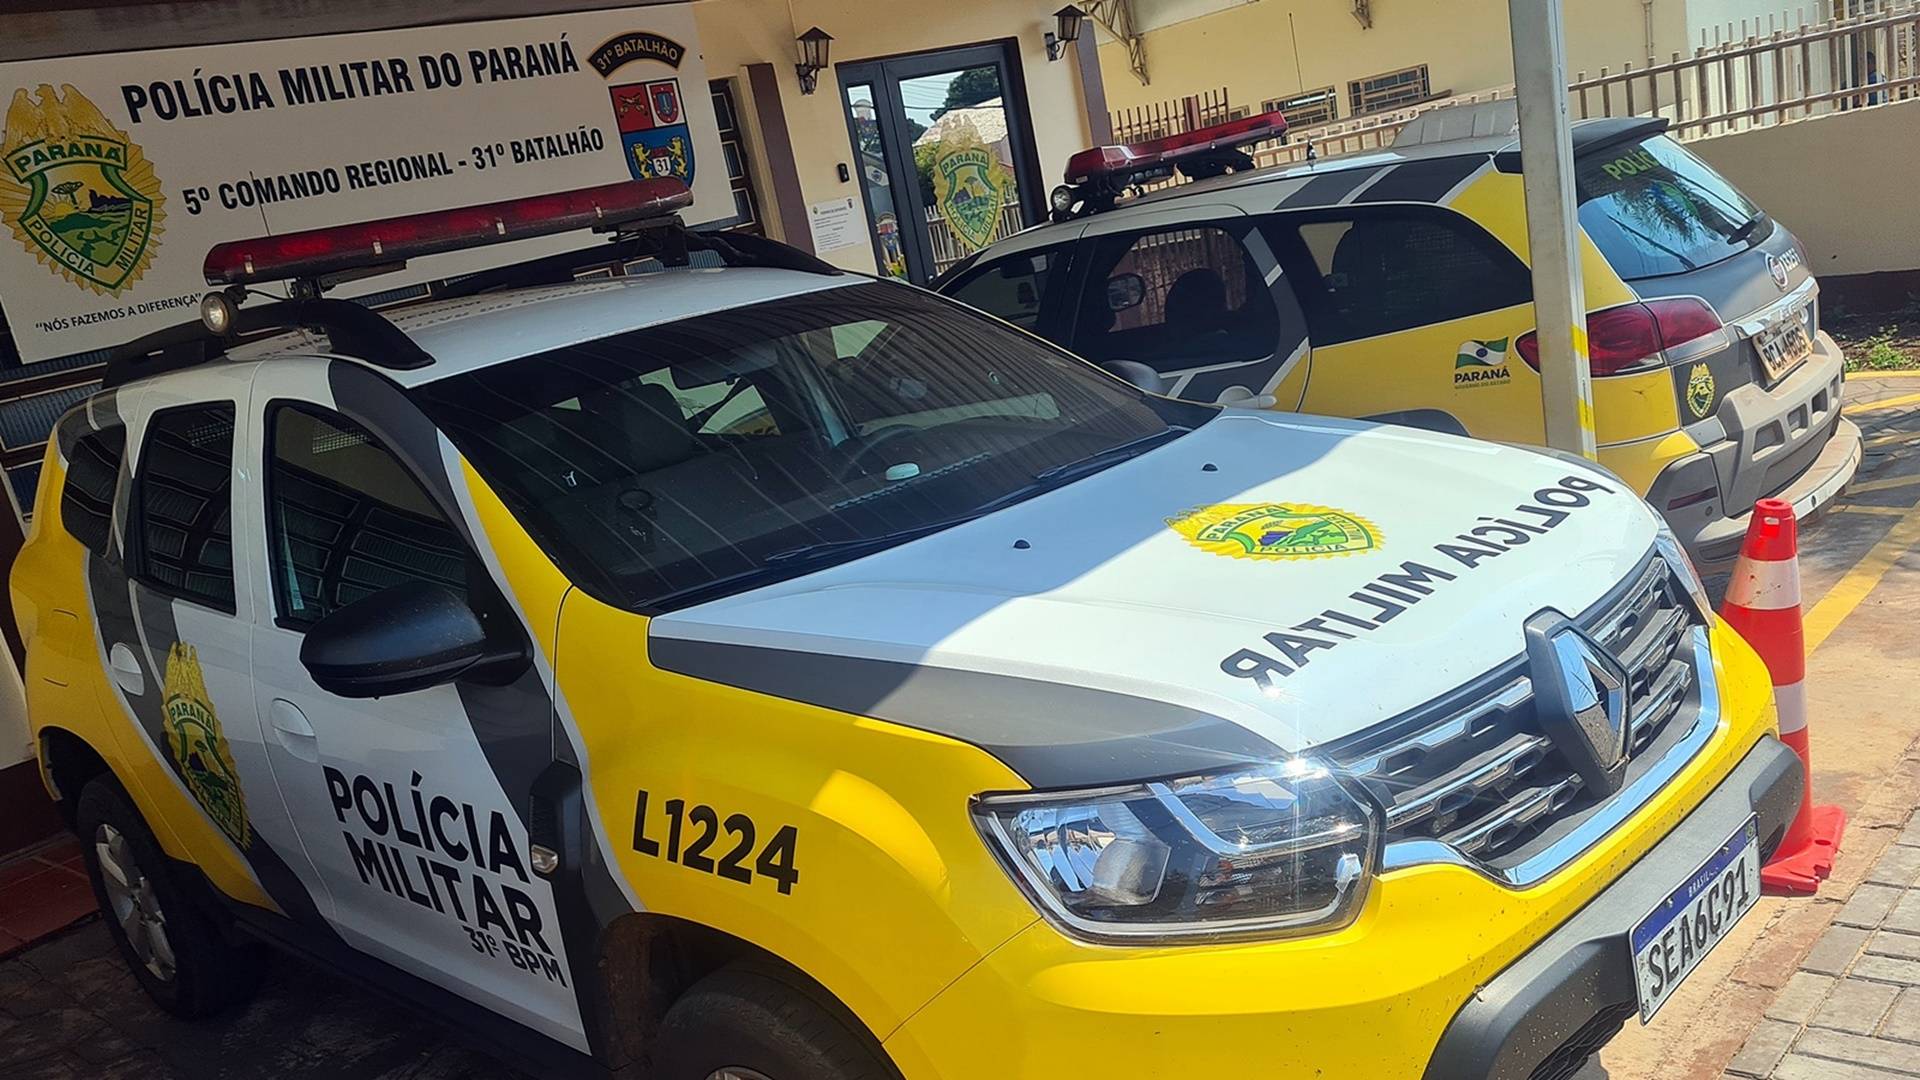 Tentativa de homicídio em Corbélia: PM prende três suspeitos e busca por um foragido